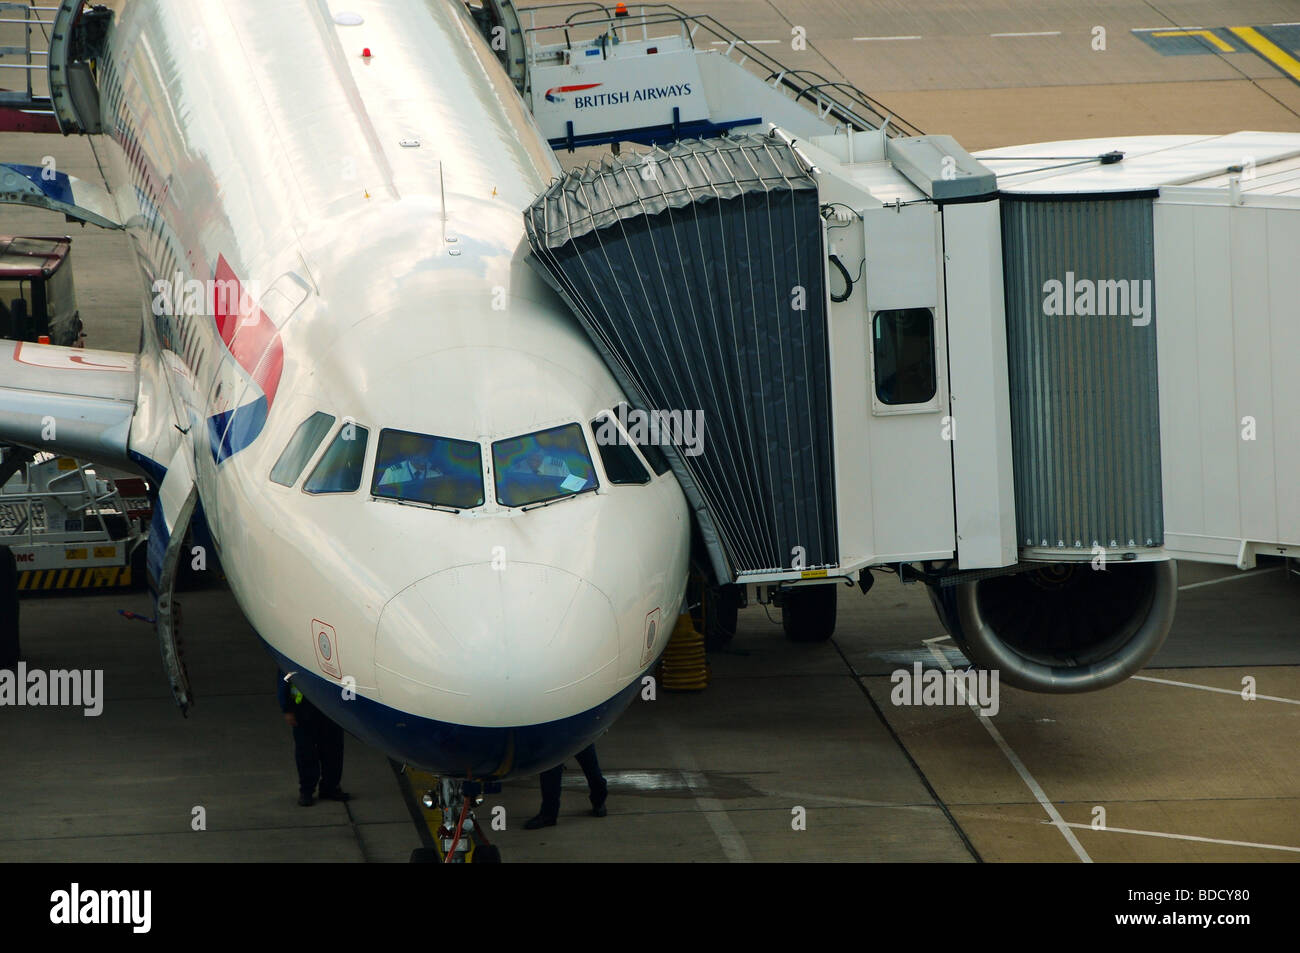 British-Airways-Maschine am Flughafen Gatwick, London, England Stockfoto